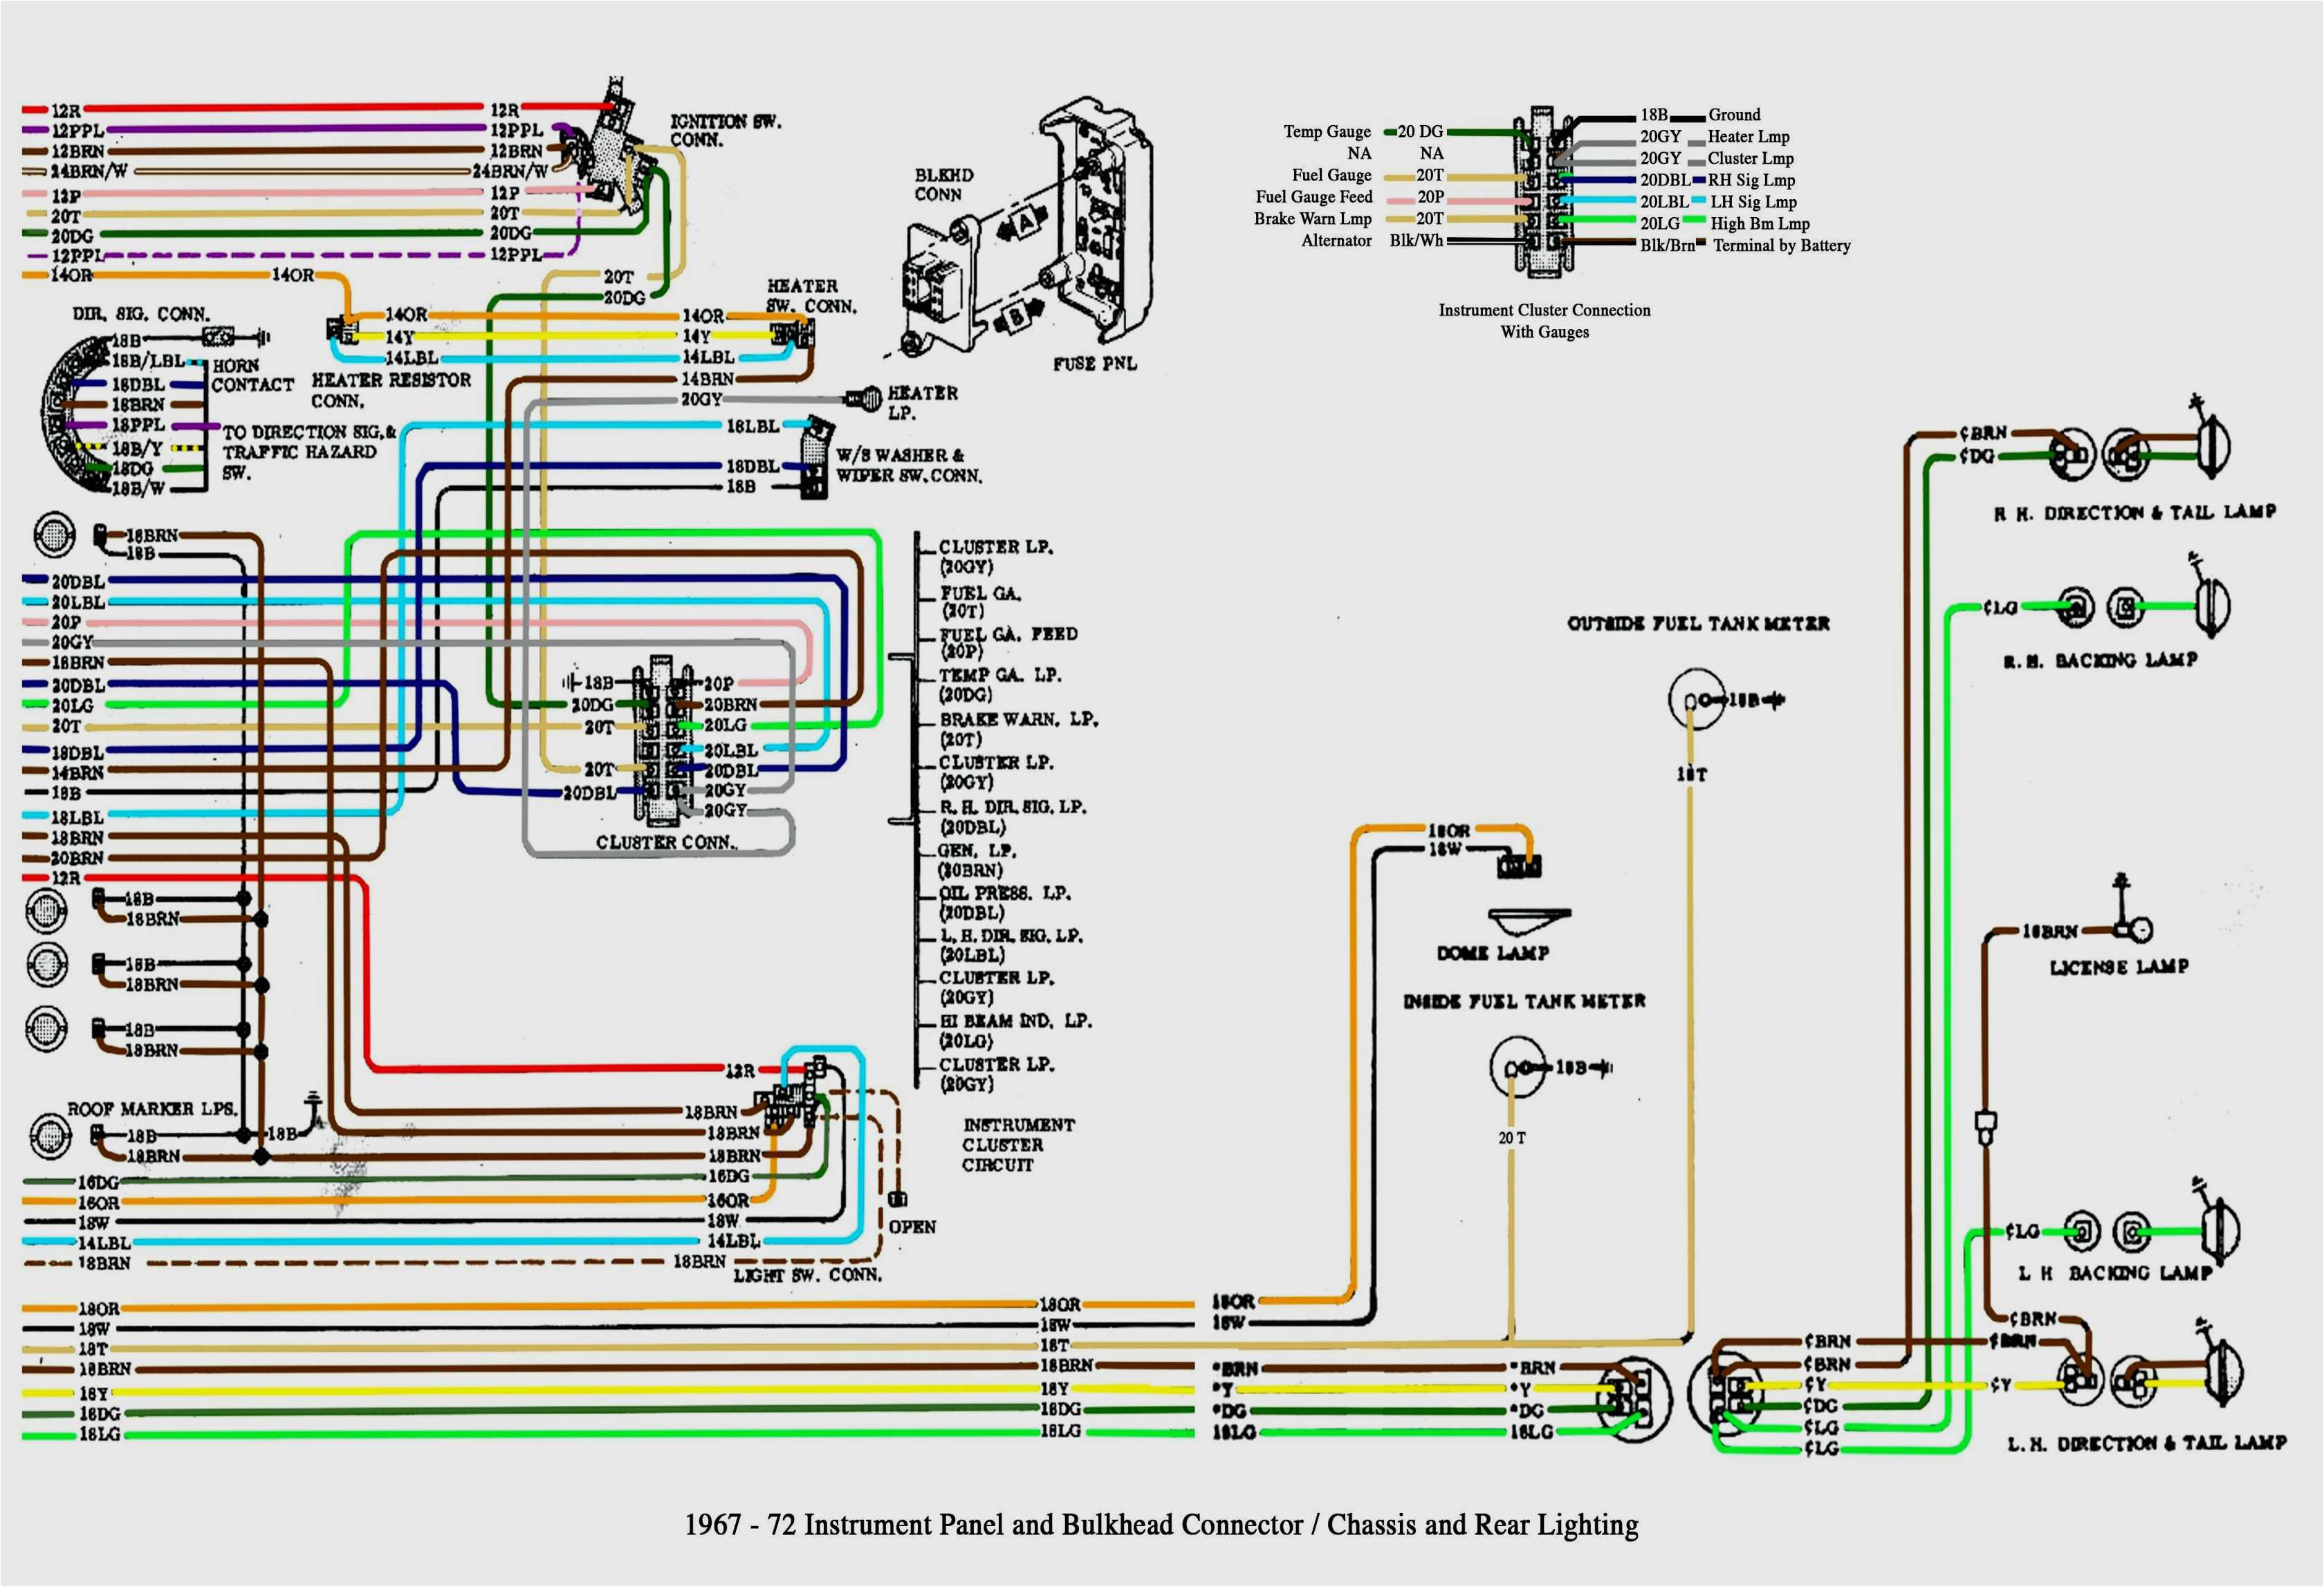 wiring diagram chevy silverado wiring diagrams ments chevy silverado wiring diagram silverado wiring diagram